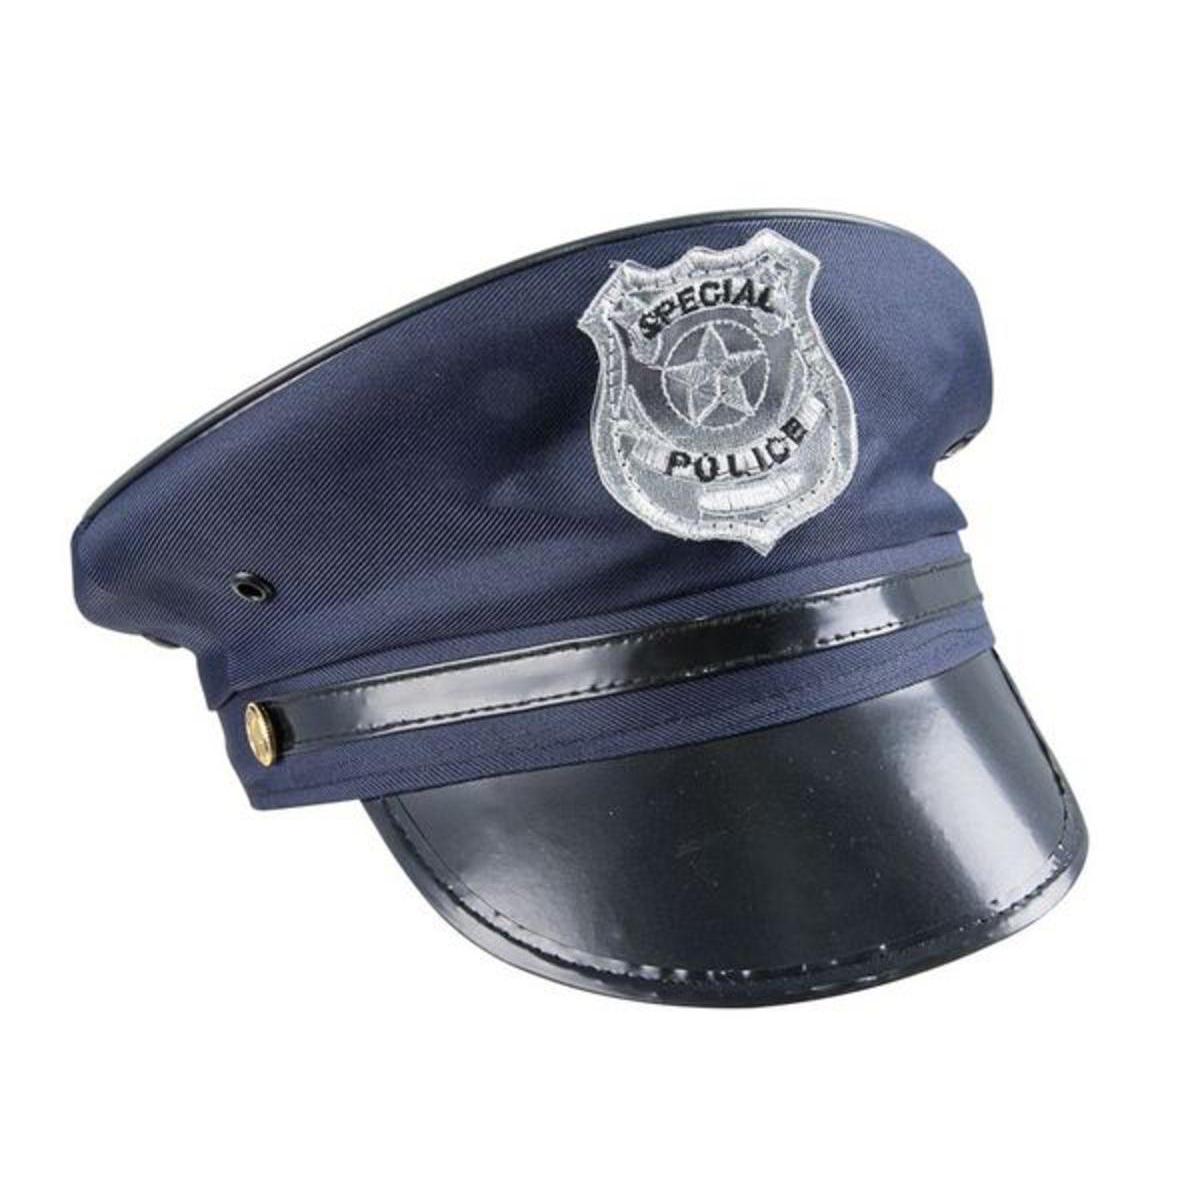 Casquette policier en polyester - Bleu